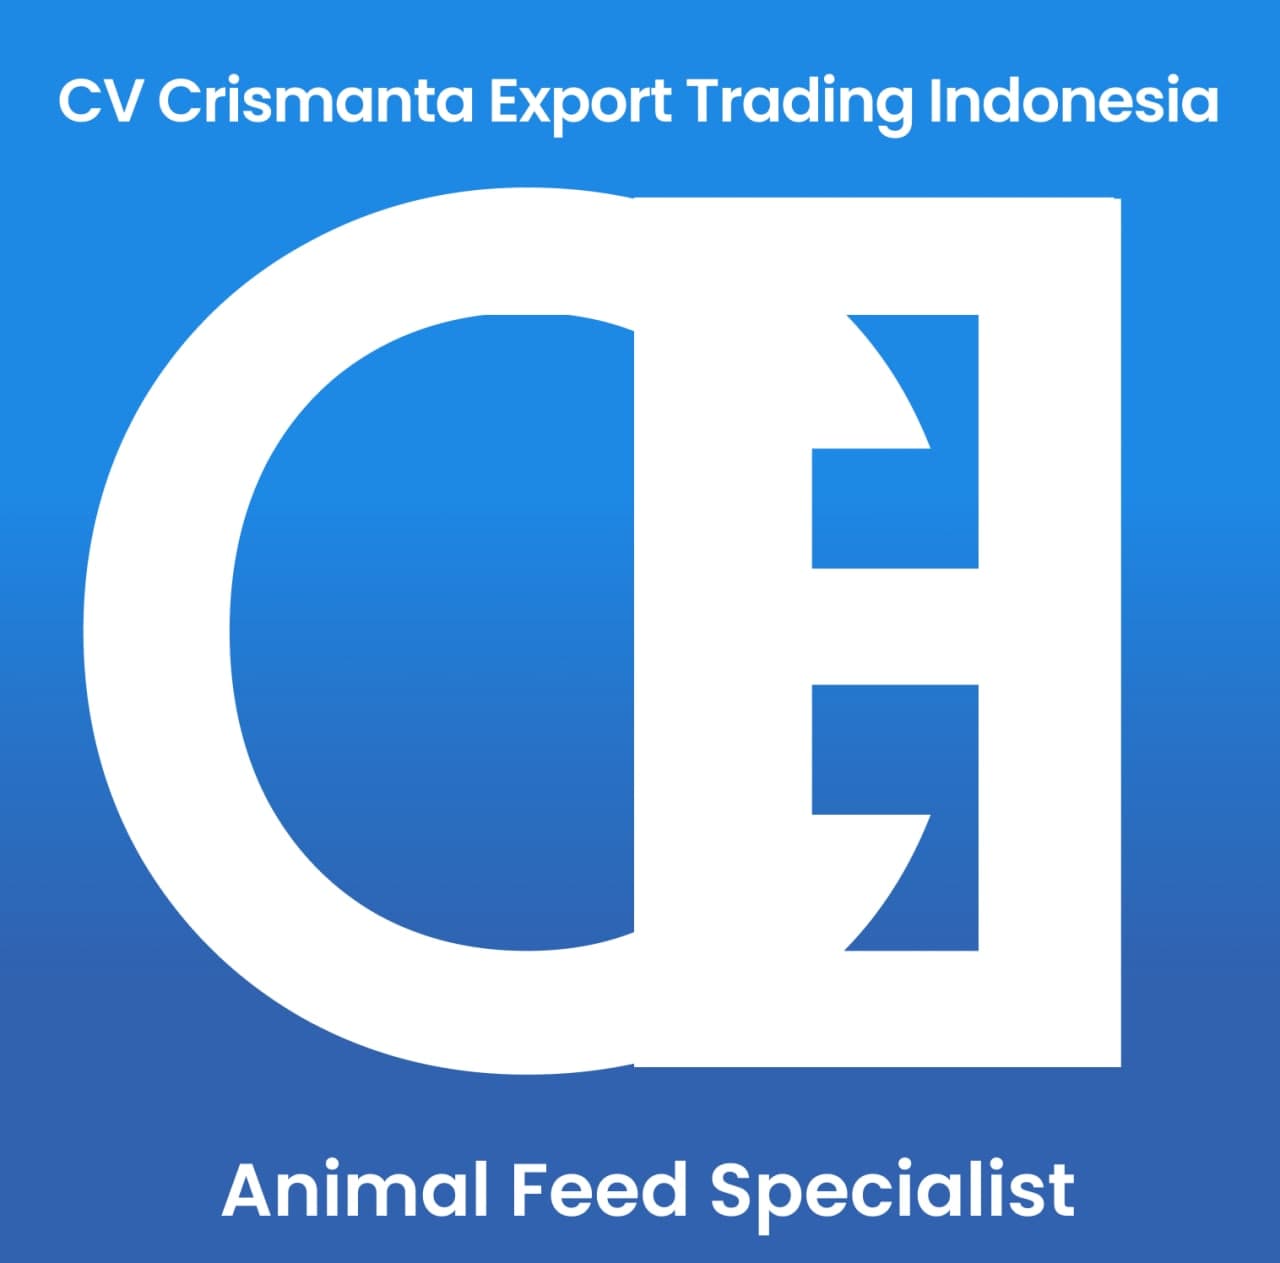 CV CRISMANTA EXPORT TRADING INDONESIA